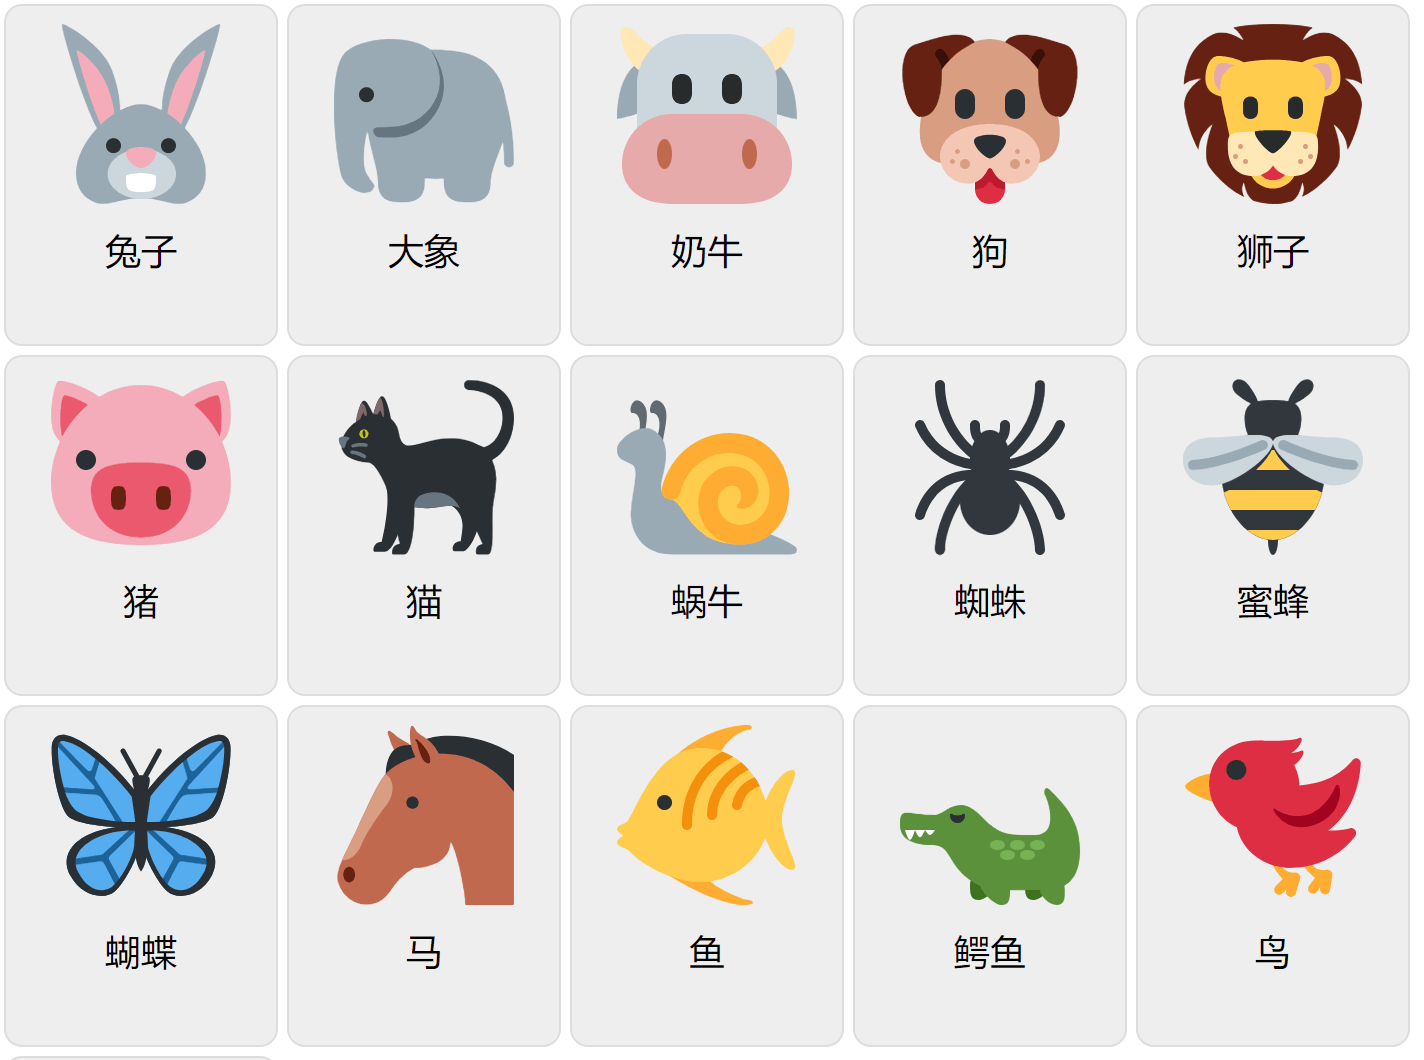 Djur på kinesiska 1